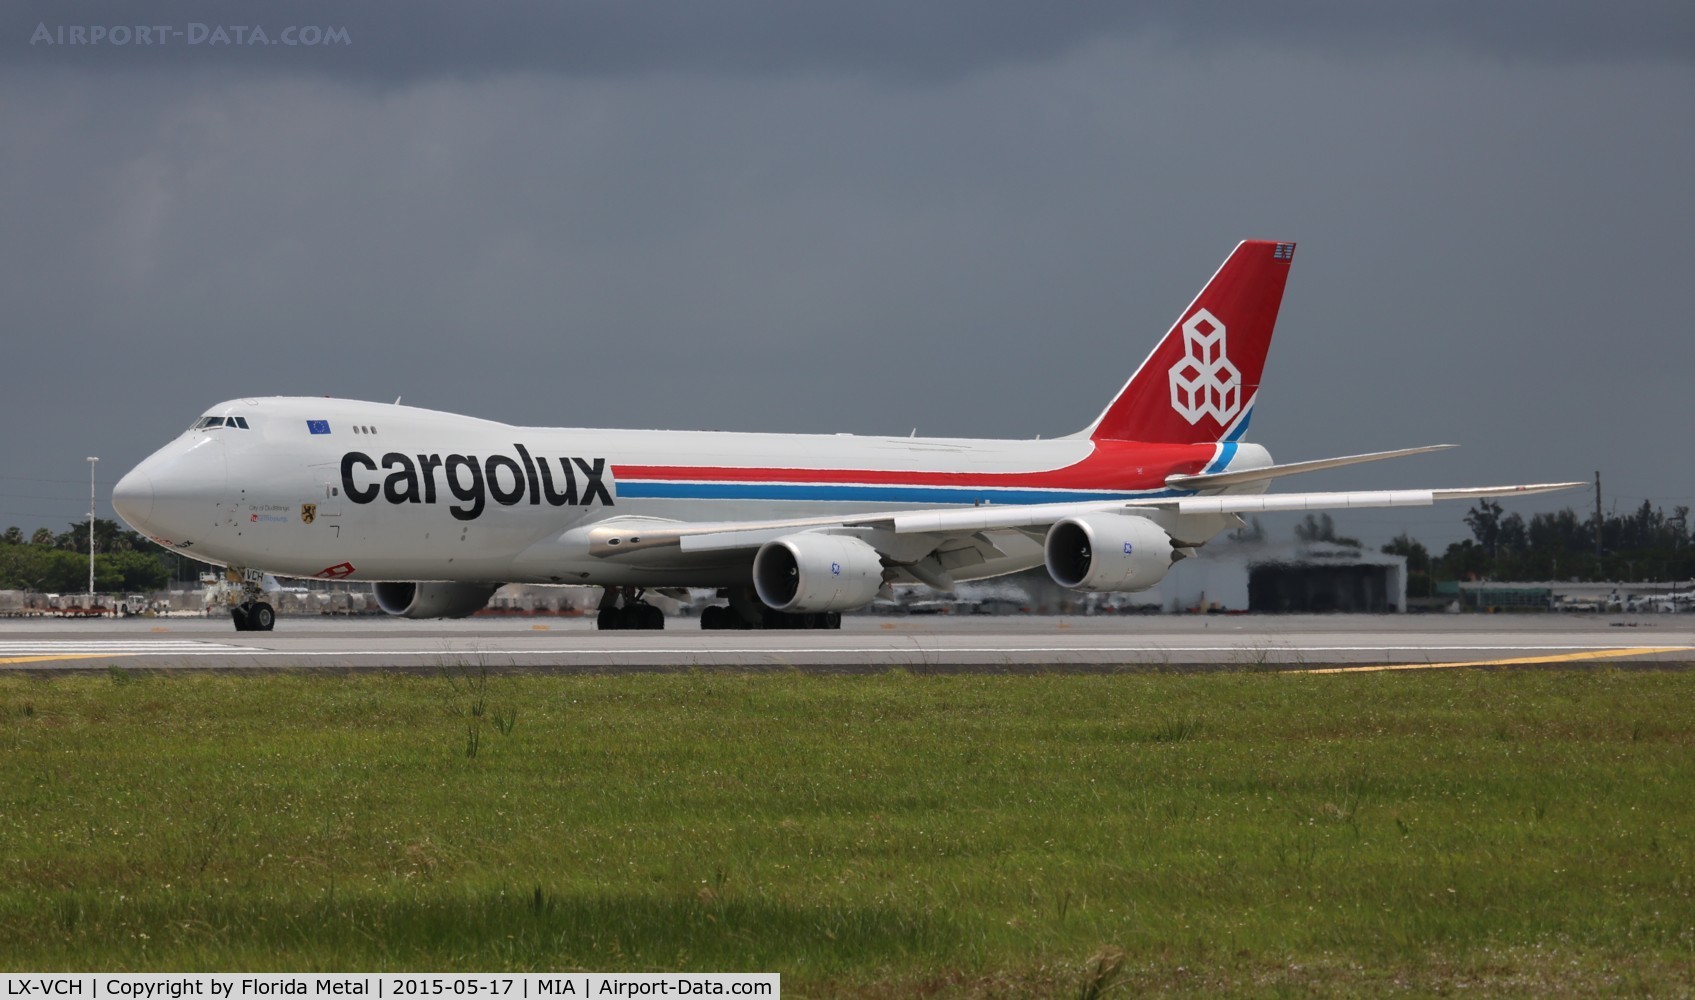 LX-VCH, 2013 Boeing 747-8R7F C/N 35821, Cargolux